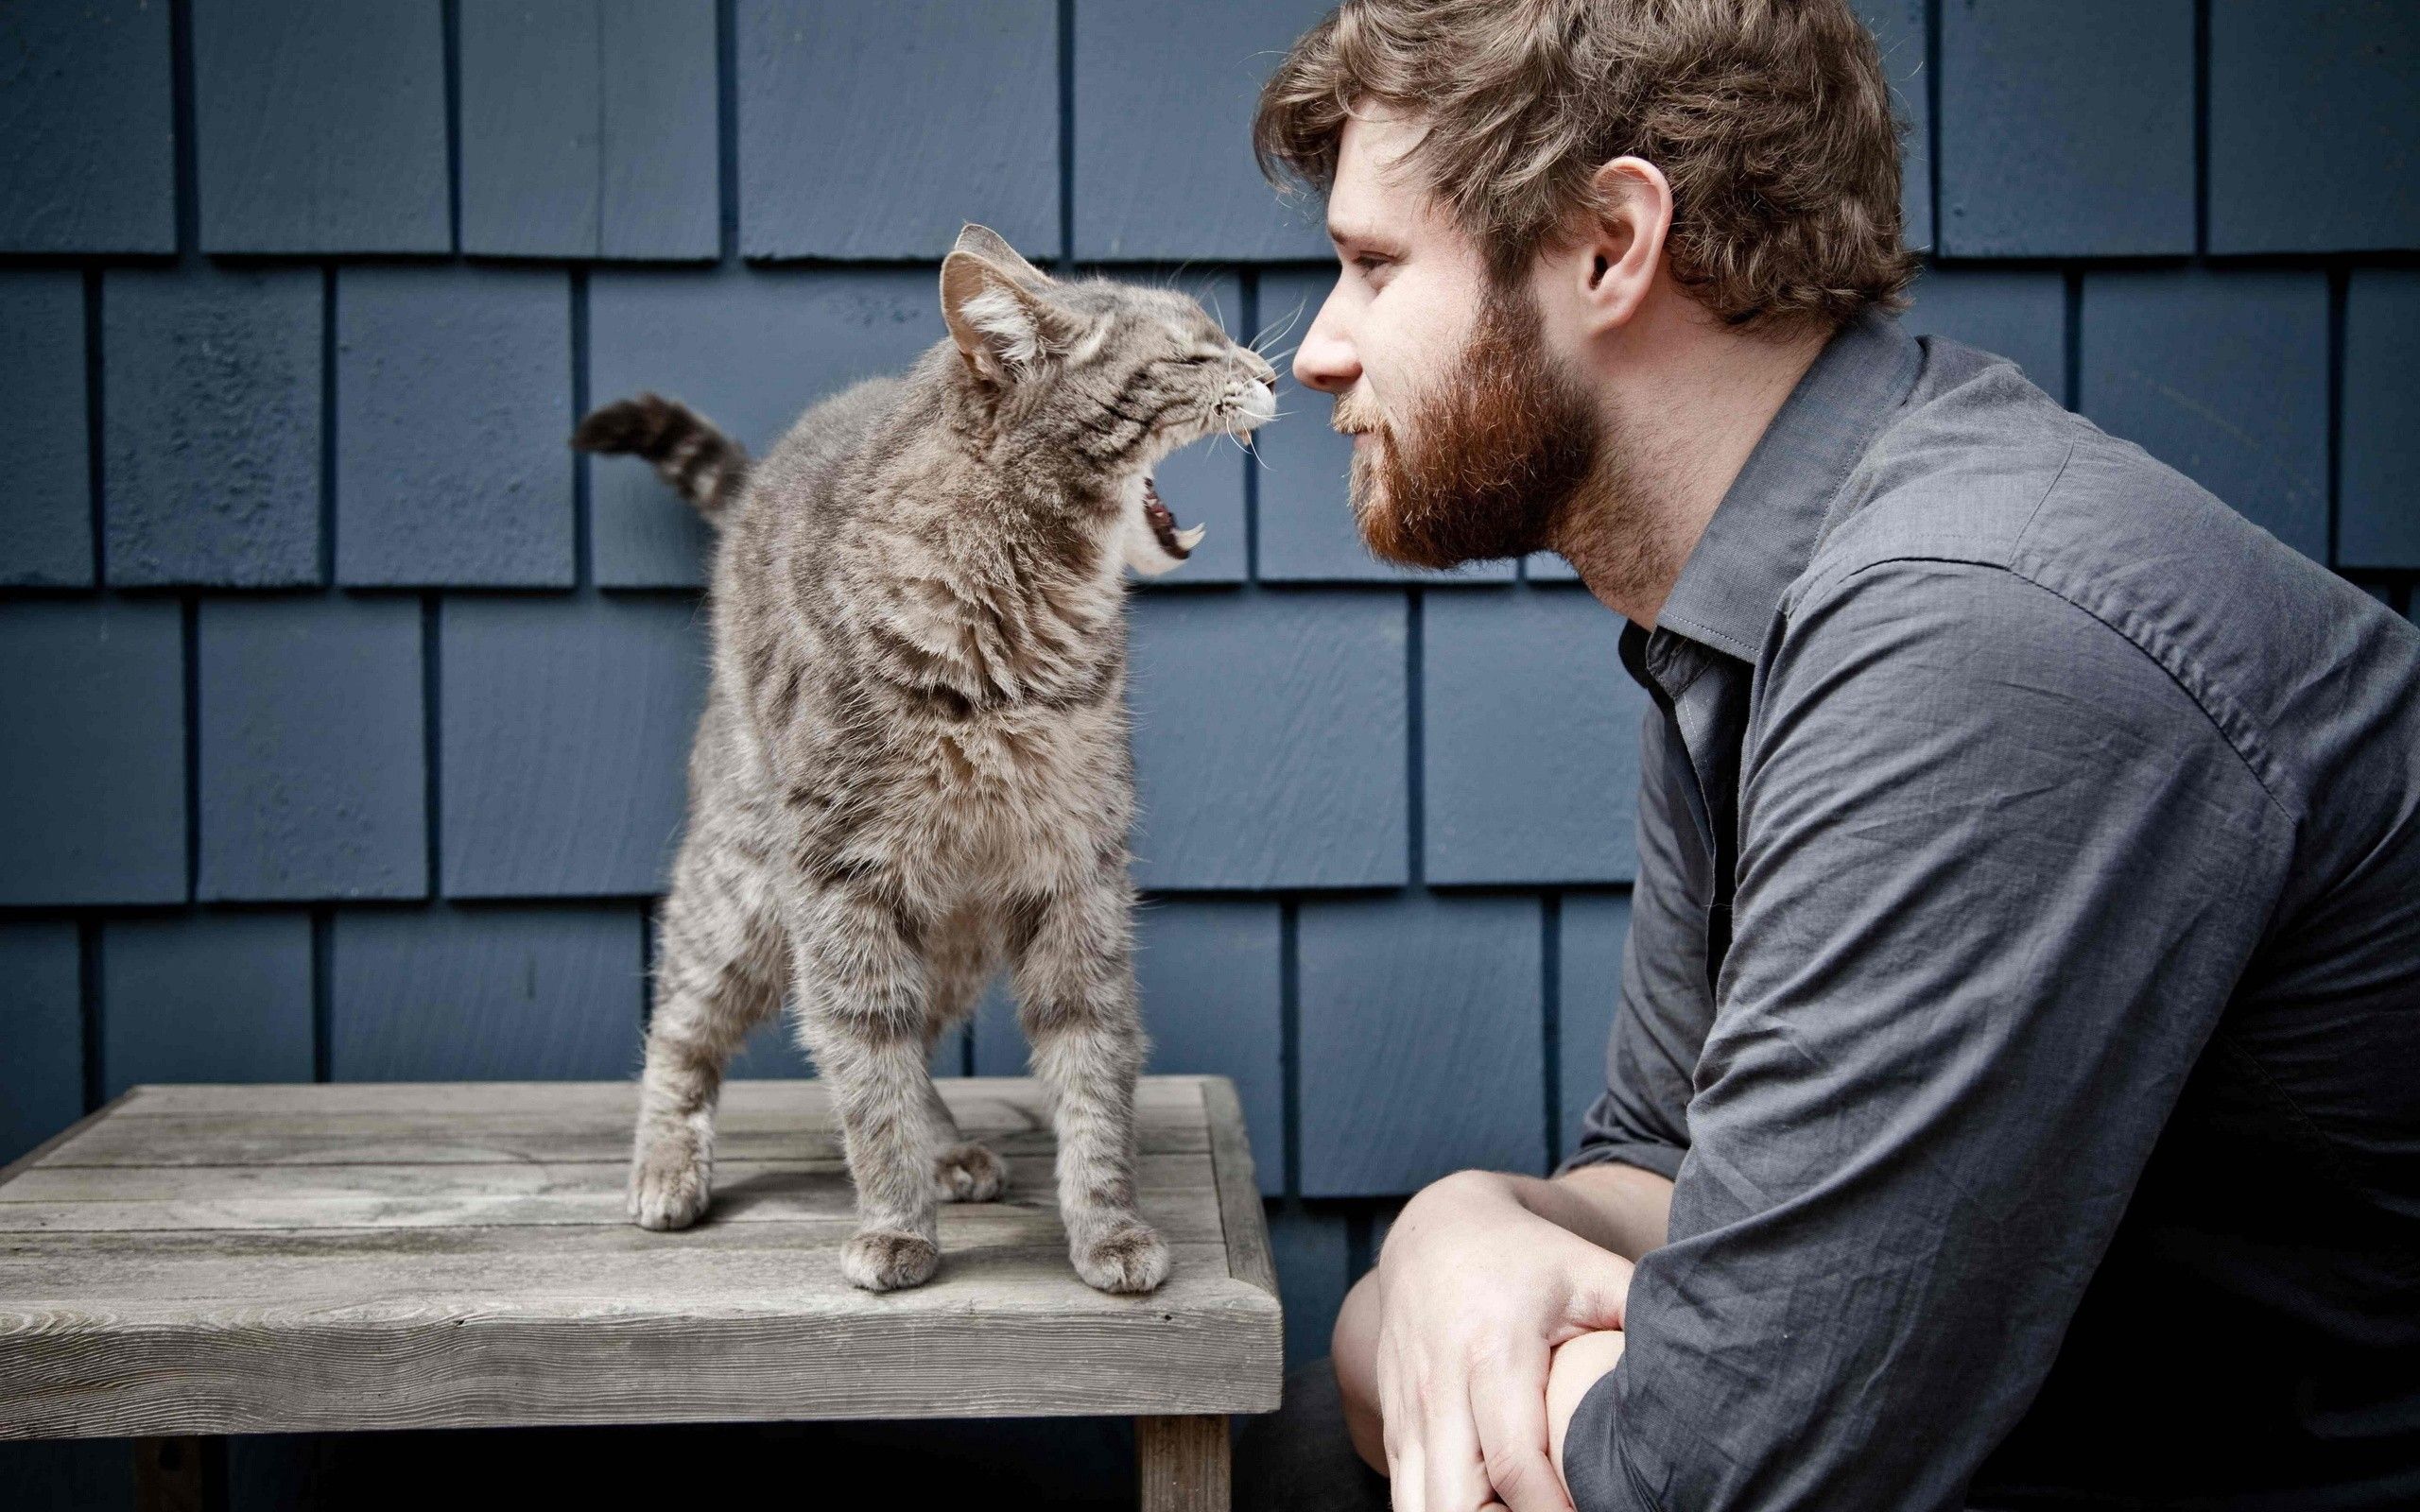 Cats animals men beard wallpaper | 2560x1600 | 8065 | WallpaperUP ...